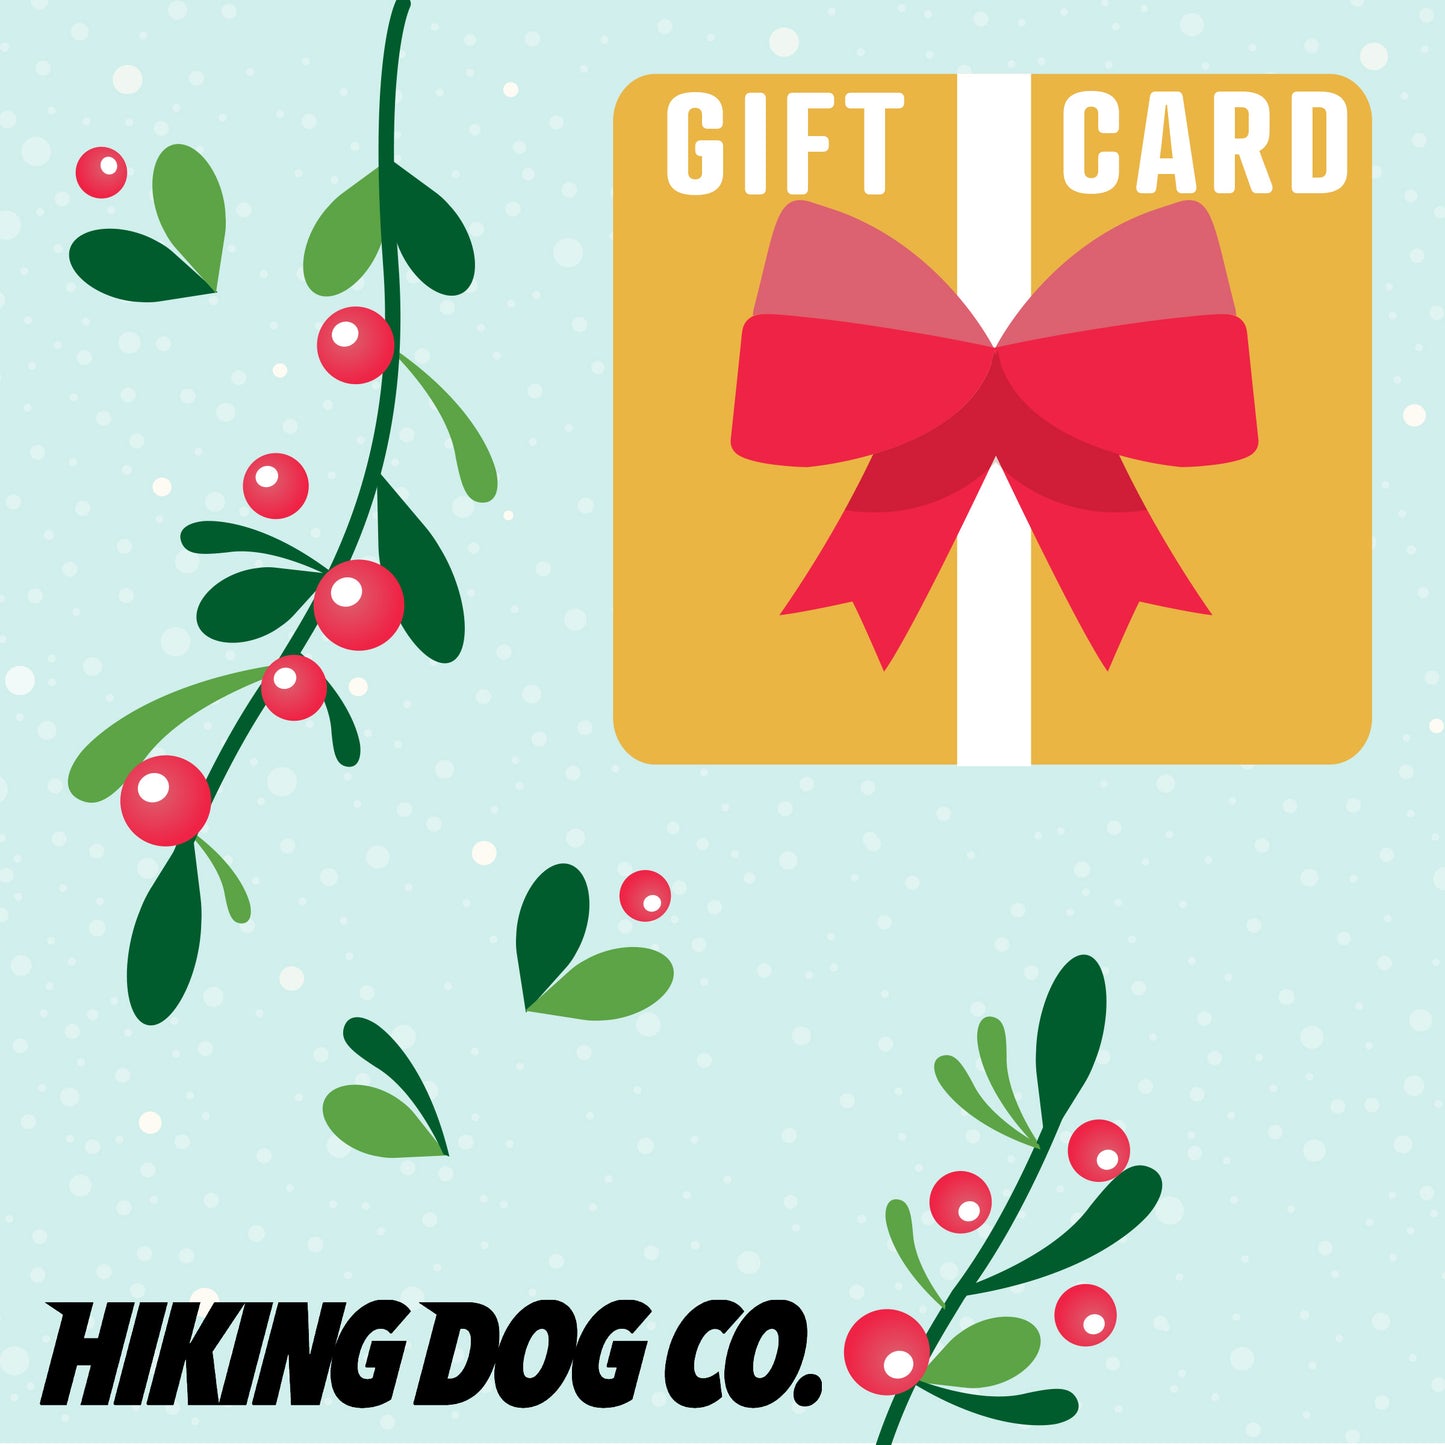 Hiking Dog Co. Gift Card